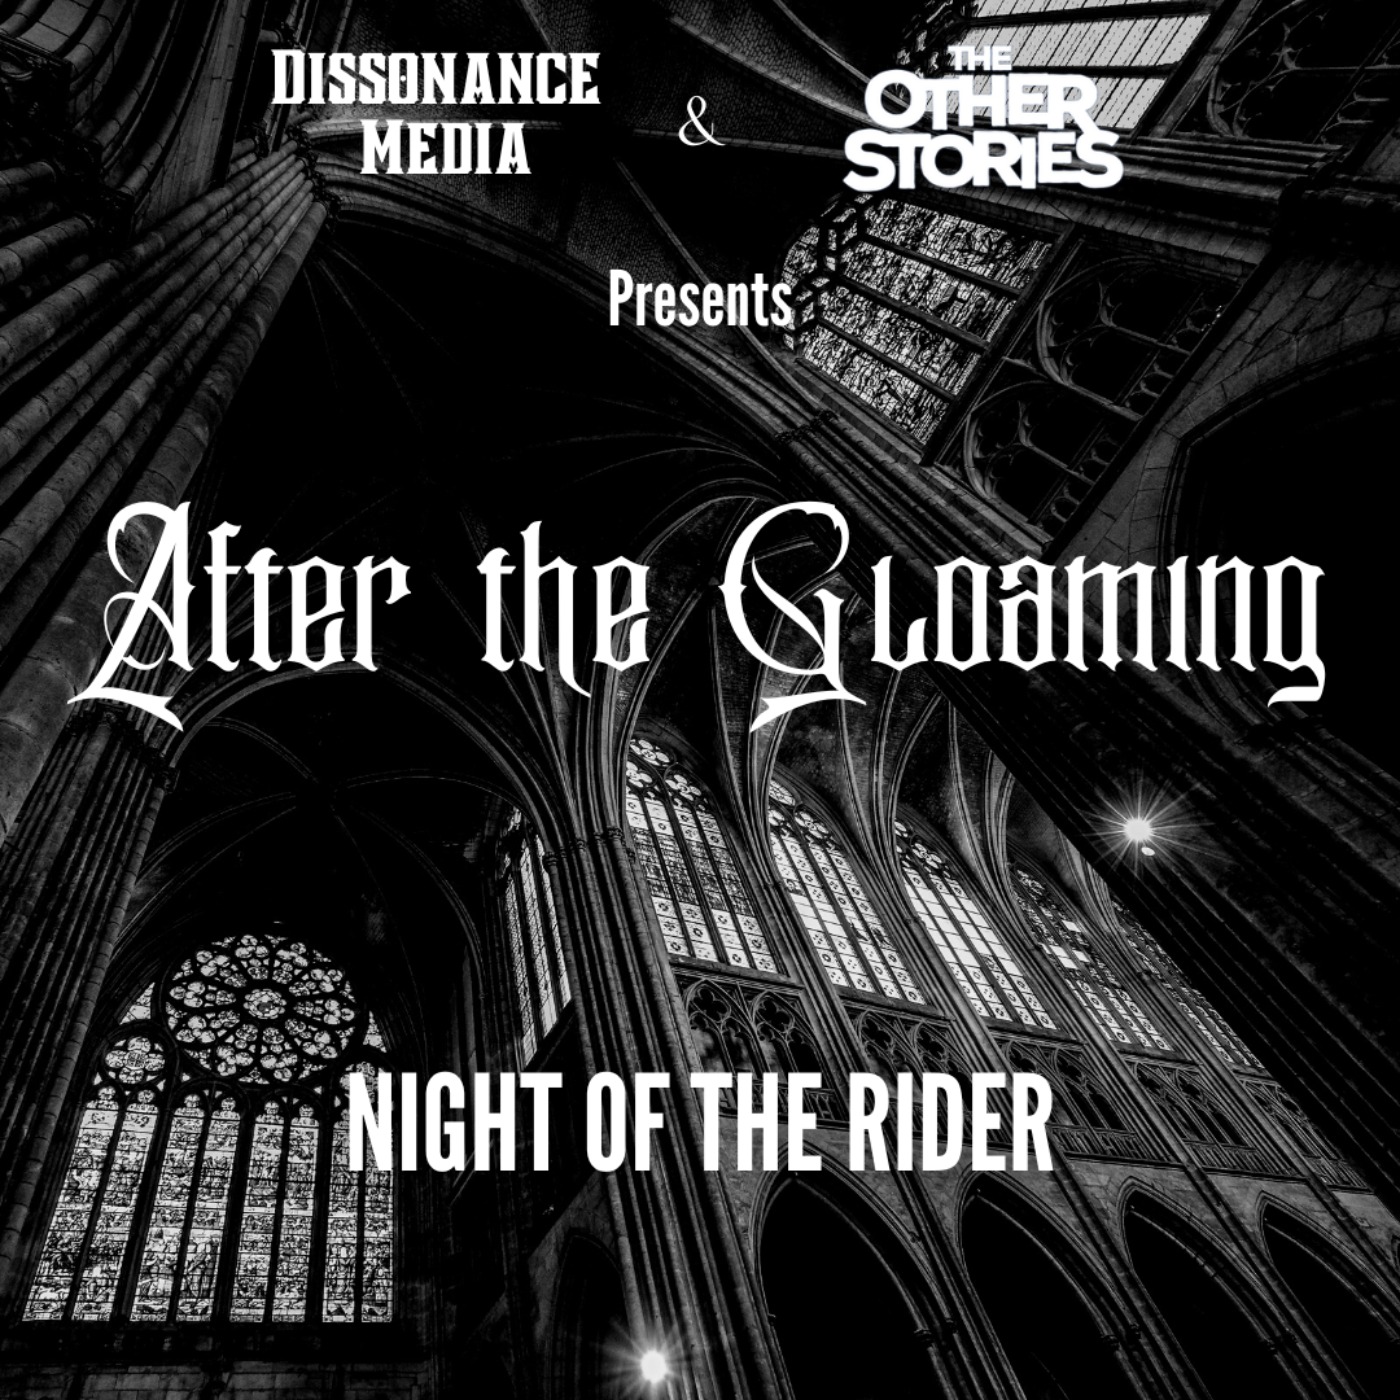 Night of the Rider